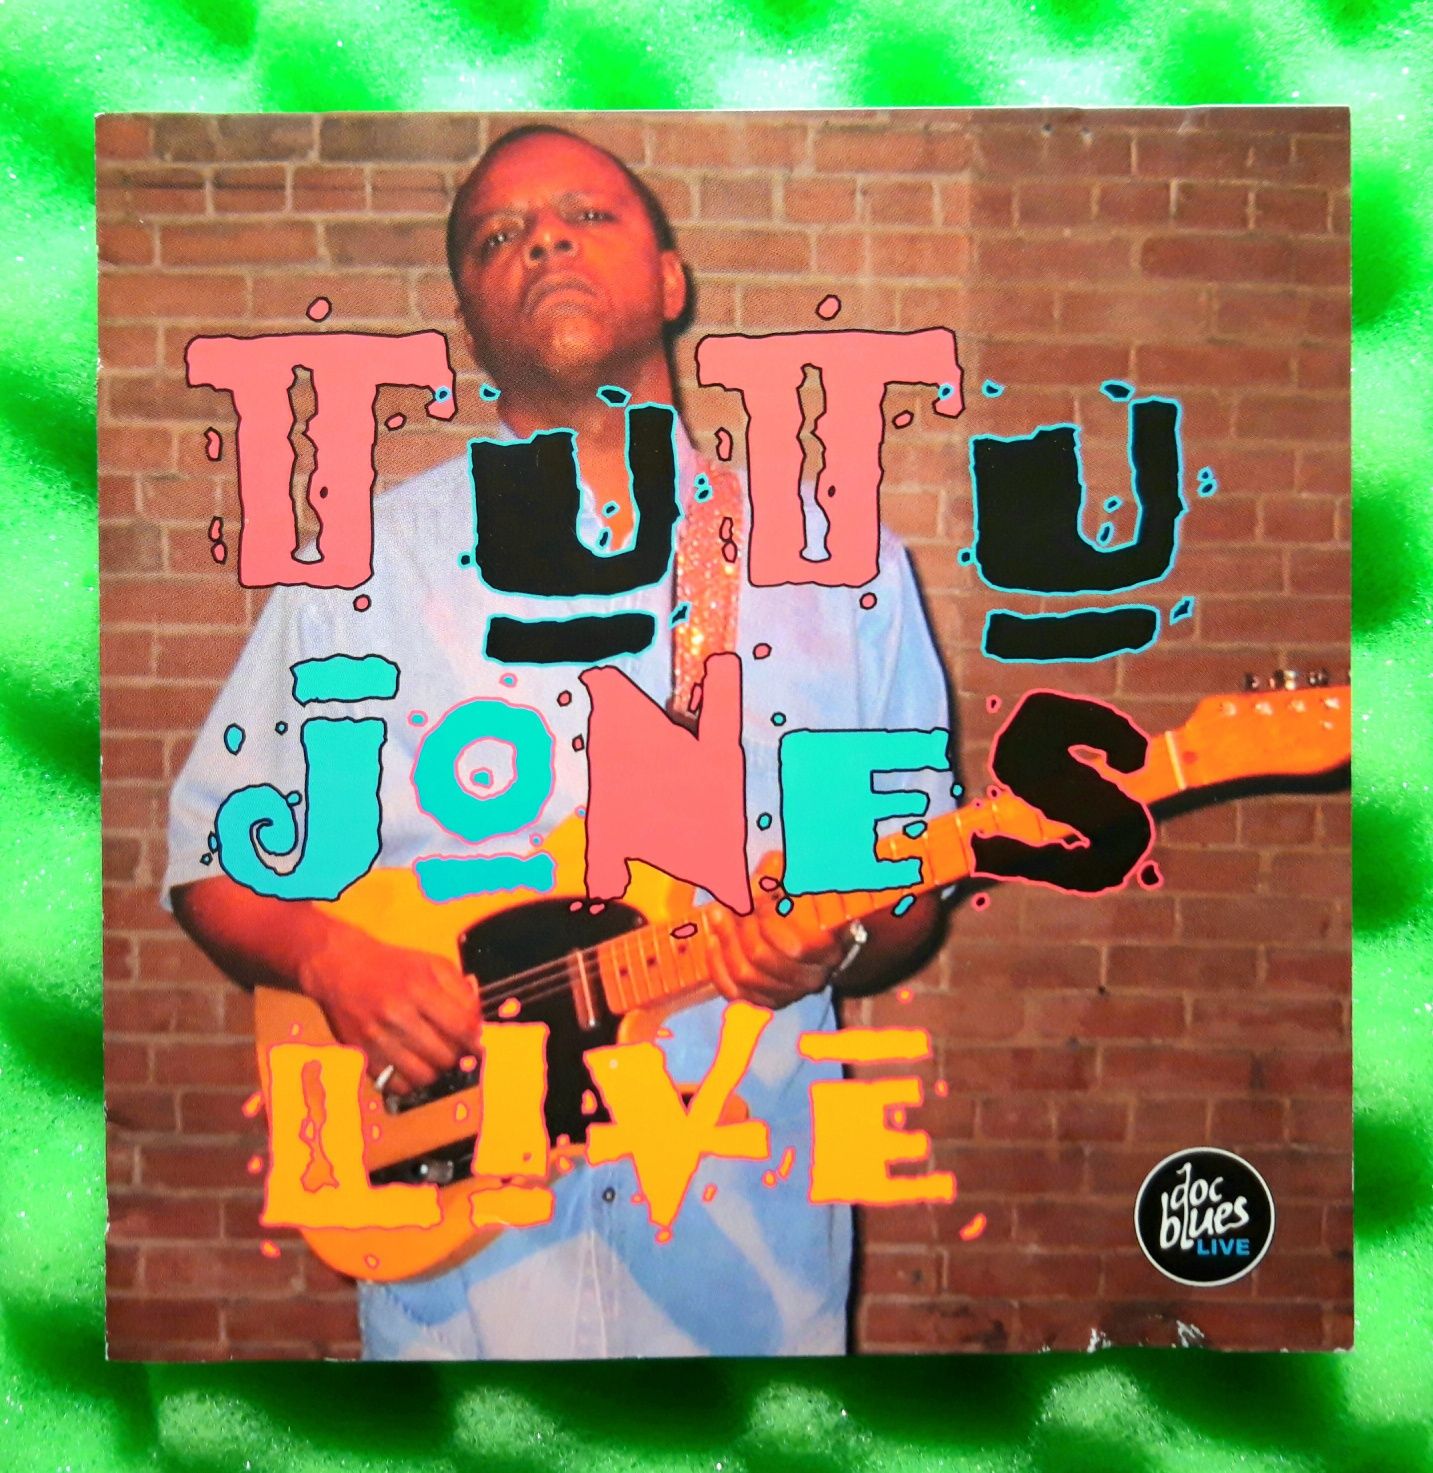 Tutu Jones – Live (CD, 2005)